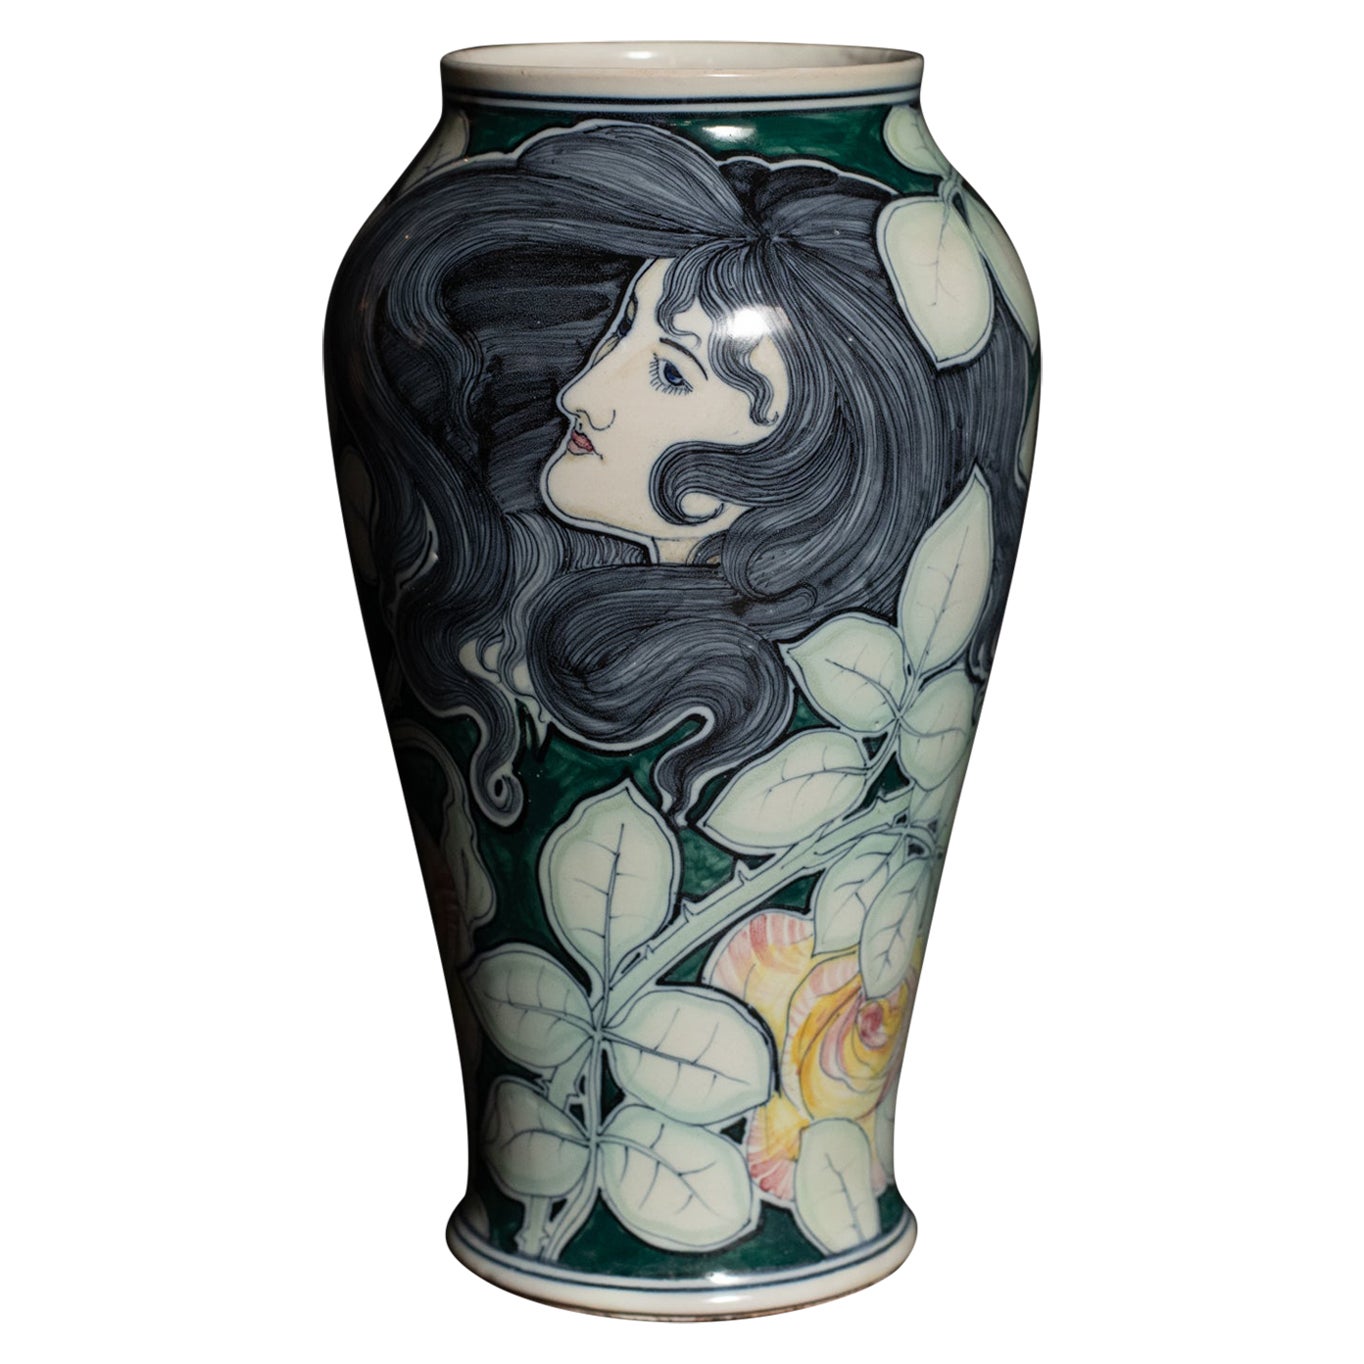 Art Nouveau Stile Liberty Portrait Vase by Galileo Chini For Sale